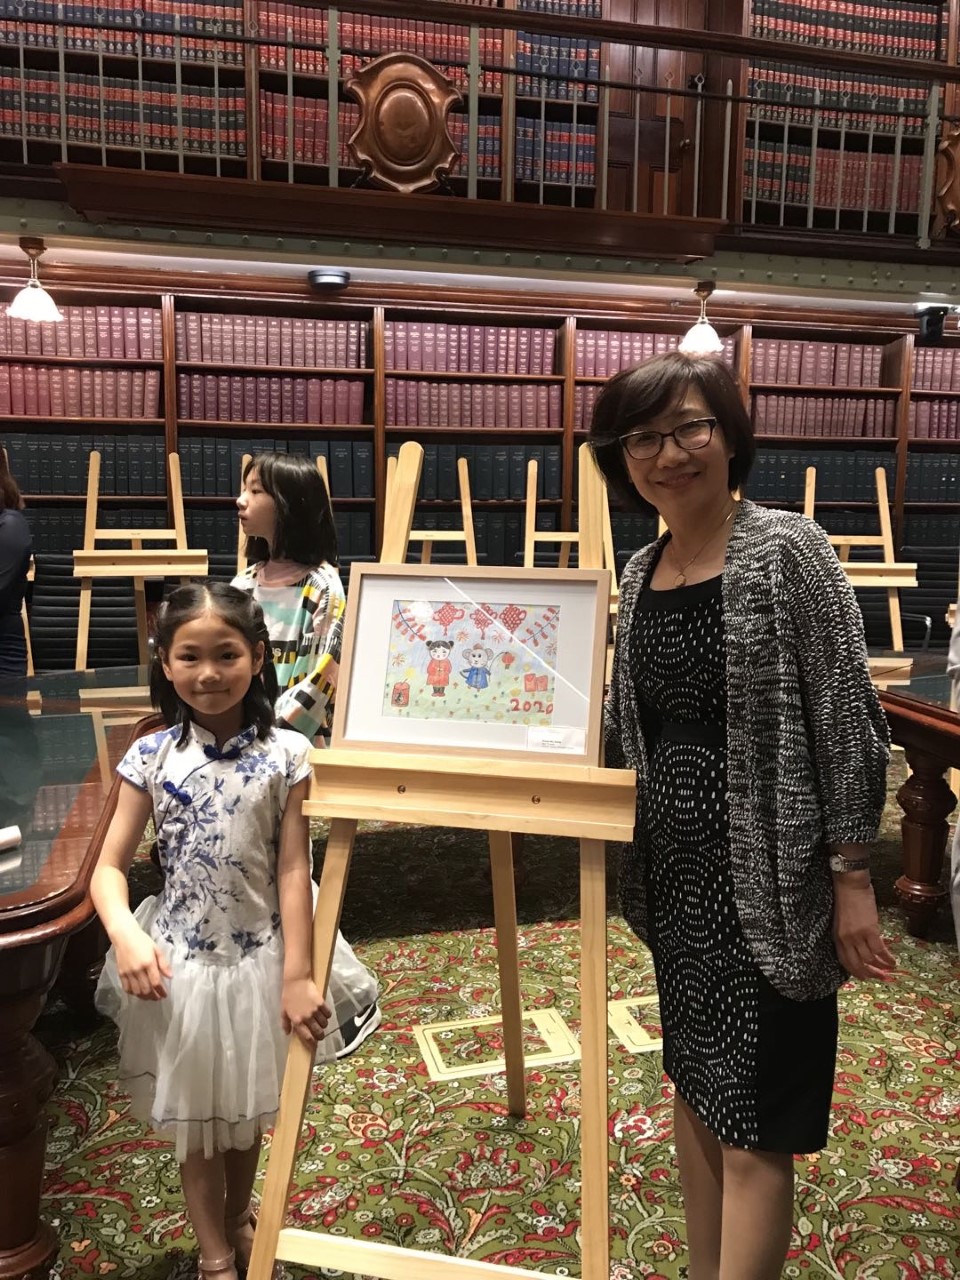 郭麗麗校長和鄭嘉瑜同學參加了在新南威爾士州議會大廳（Parliament House）舉行的頒獎儀式